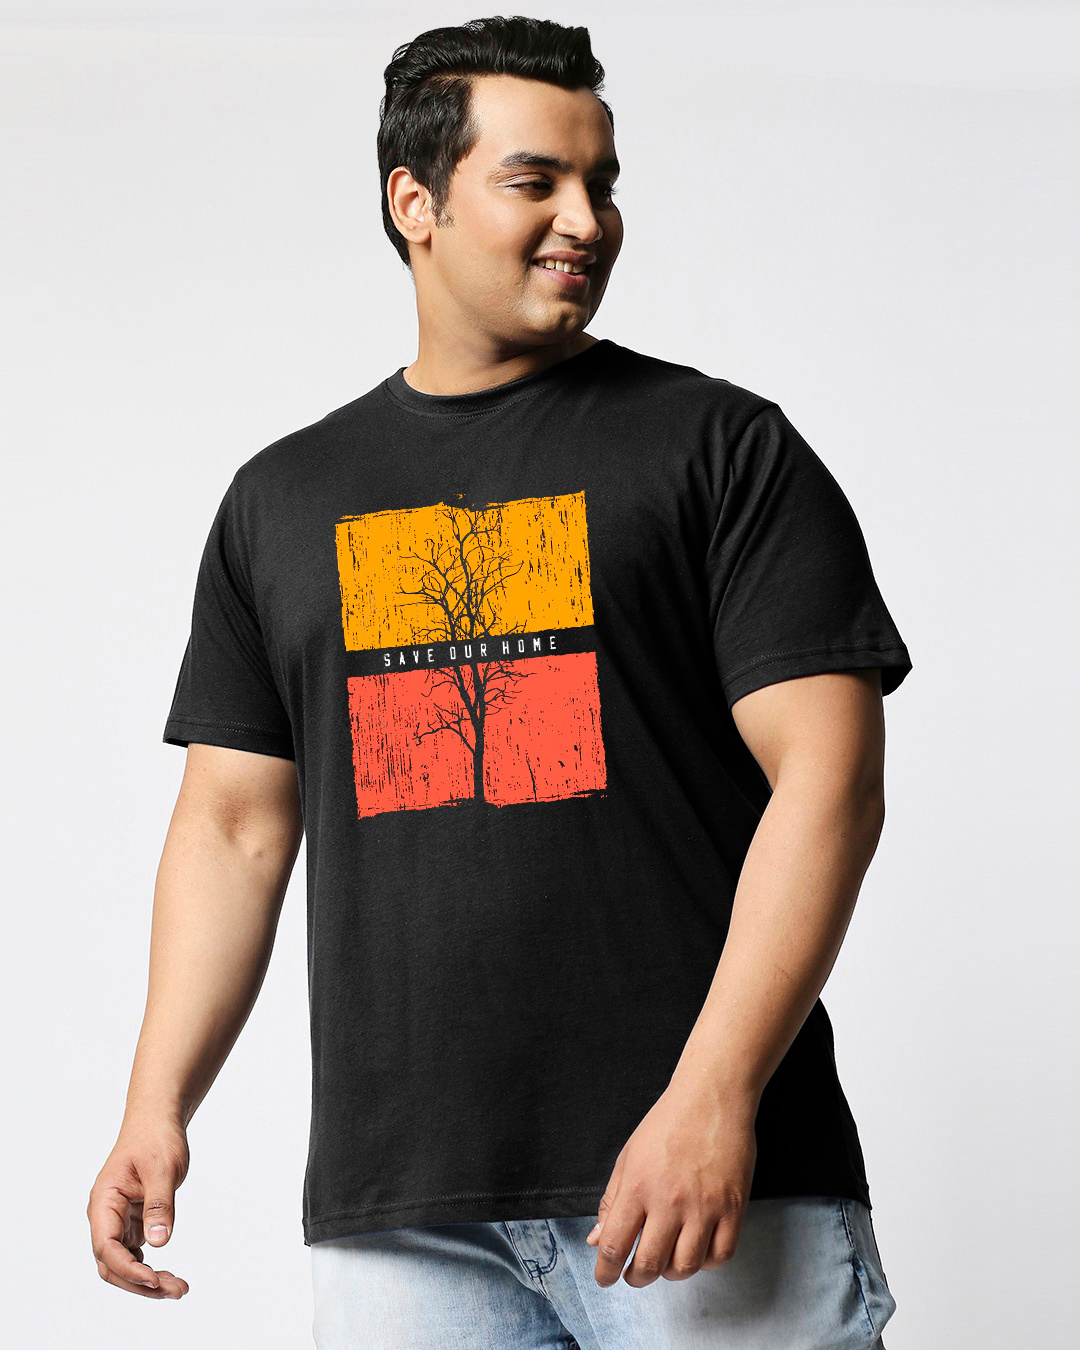 Shop Men's Black Save Our Home Graphic Print Plus Size T-shirt-Back